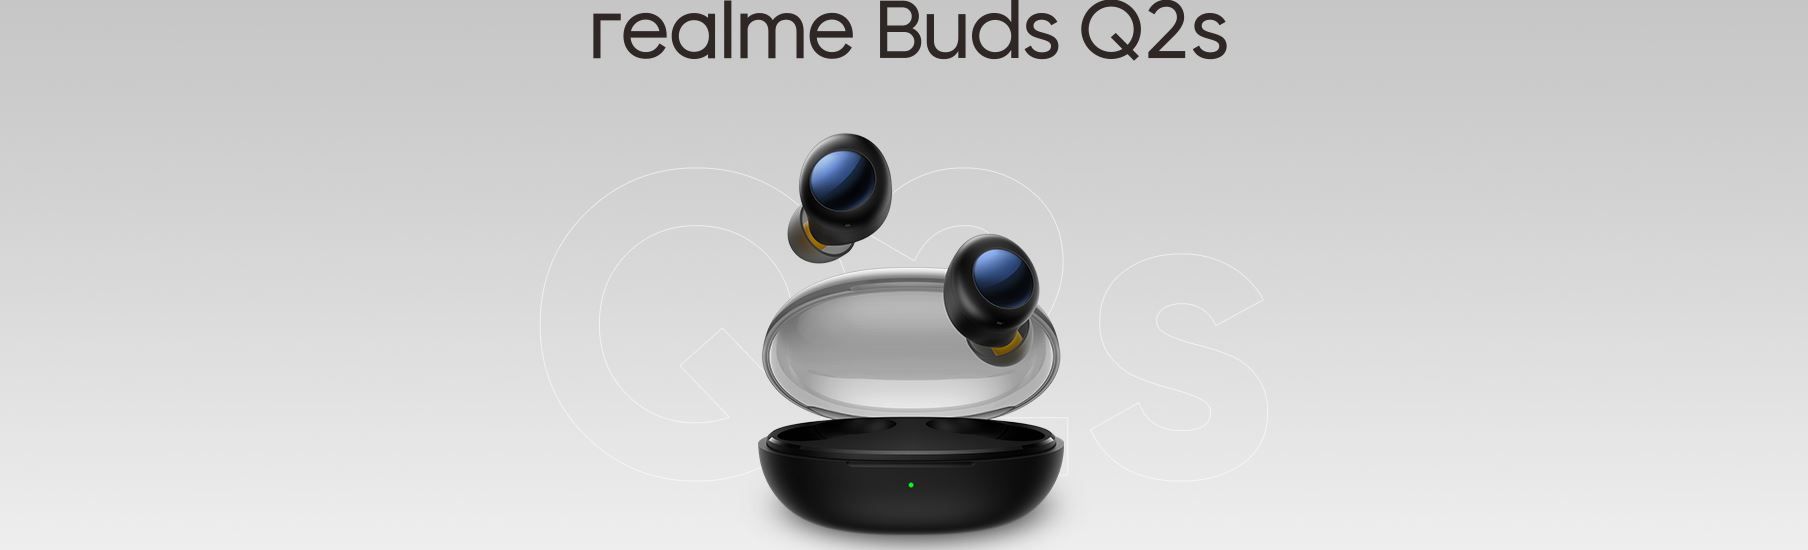  krásná přenosná sluchátka realme buds q2s stylový design vhodná i pro sport Bluetooth enc potlačení šumů při handsfree volání výdrž až 30 h nabíjecí box odolná vodě a potu